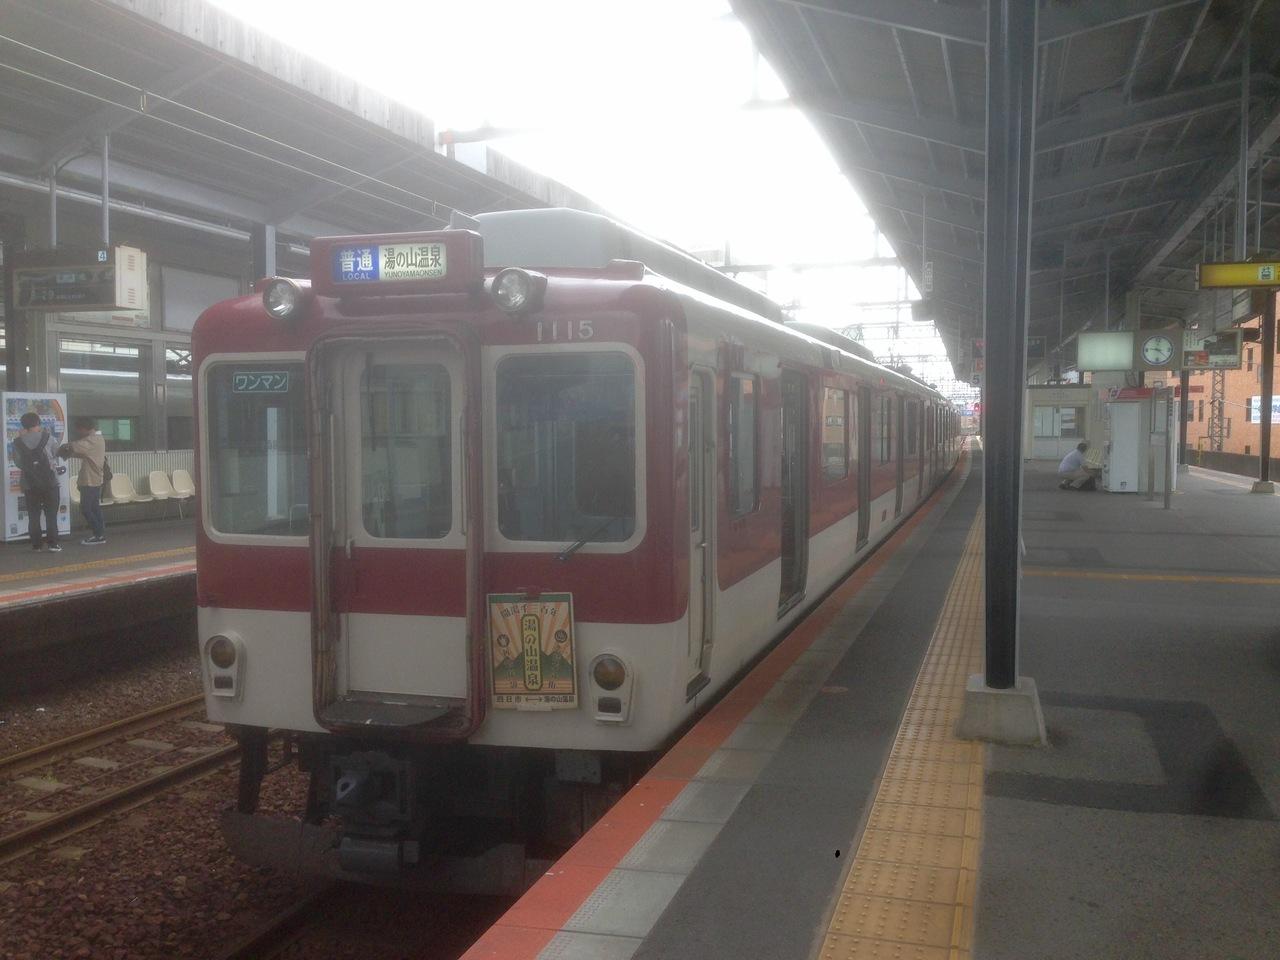 さよなら クロ381系パノラマグリーン車に会いに行く旅 愛知県の旅行記 ブログ By Tx 1000さん フォートラベル